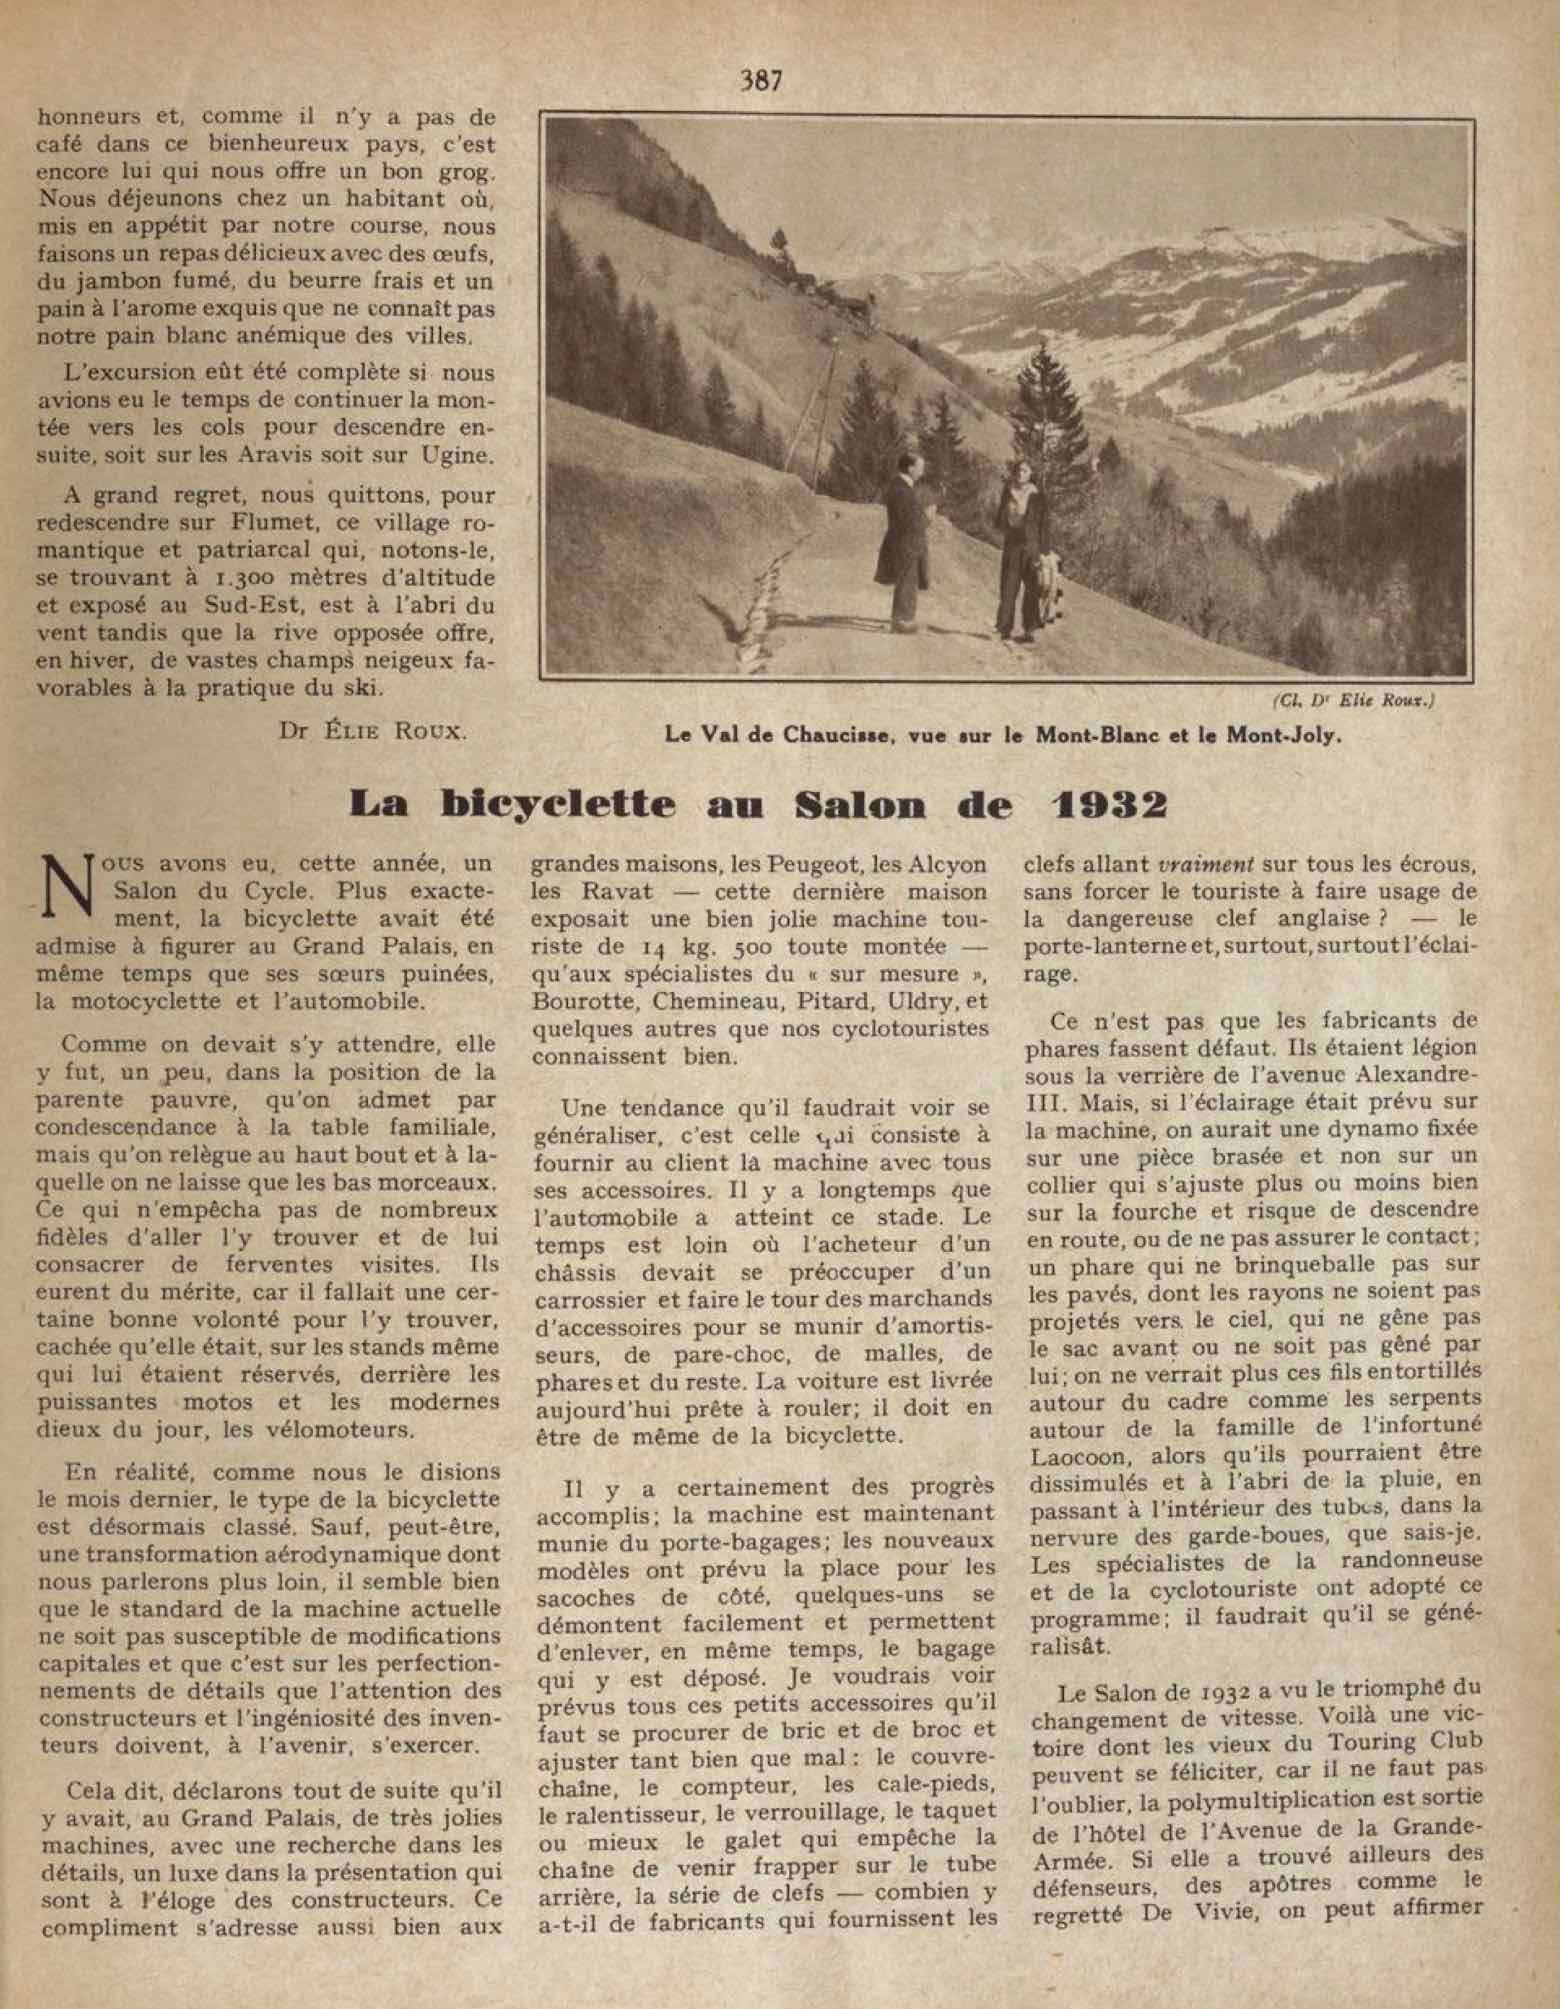 T.C.F. Revue Mensuelle December 1932 - La bicyclette au Salon de 1932 scan 1 main image